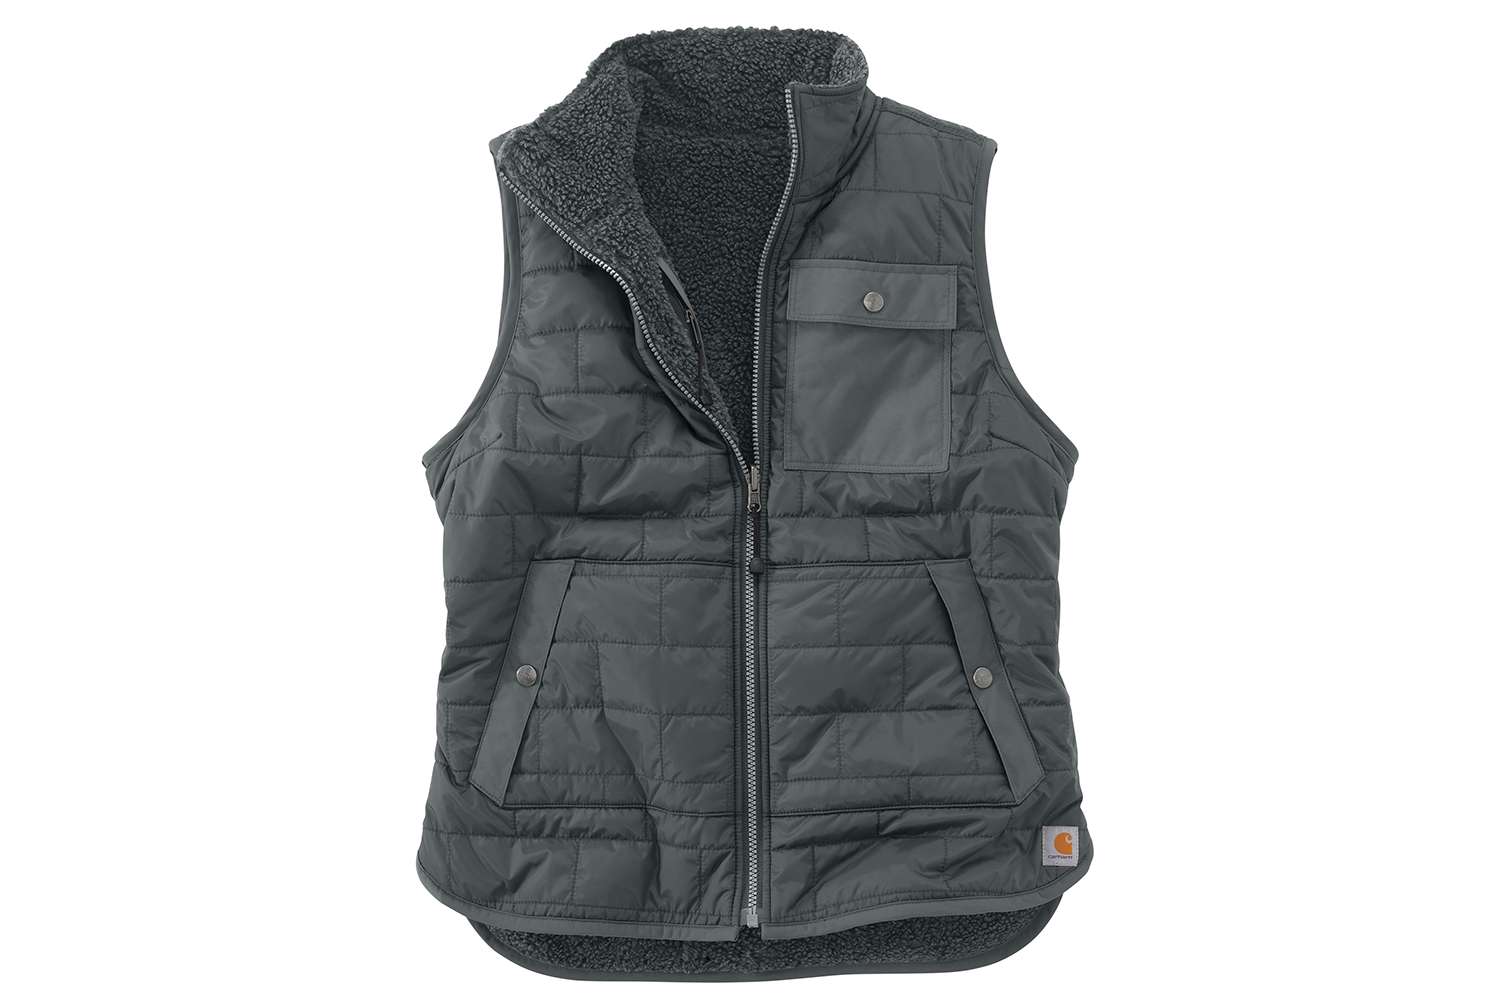 Carhartt Reversible Amoret Sherpa-Lined Vest, $79.99